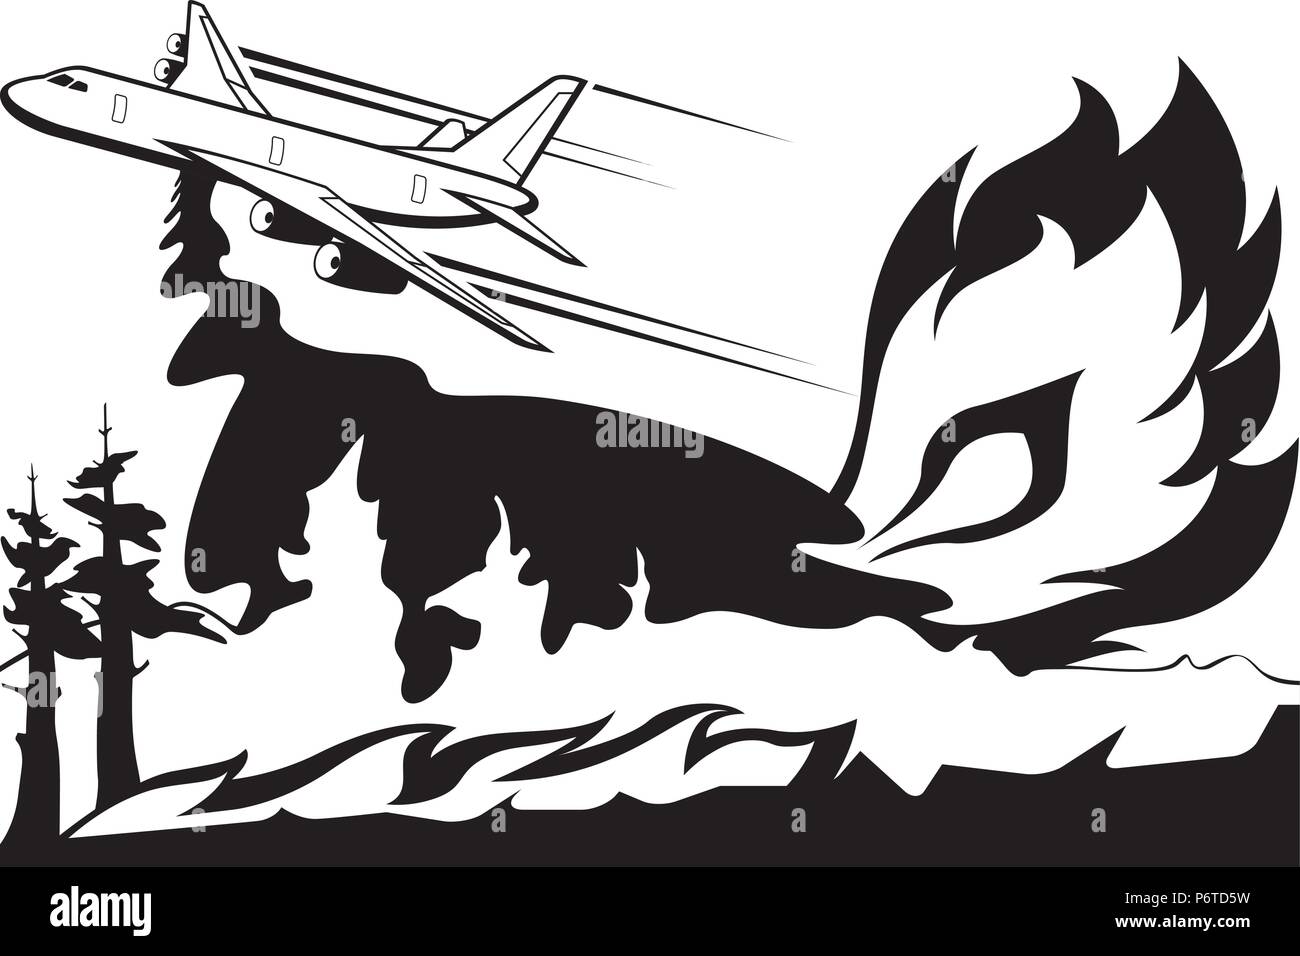 L'avion de lutte contre les incendies de forêt s'éteint - vector illustration Illustration de Vecteur